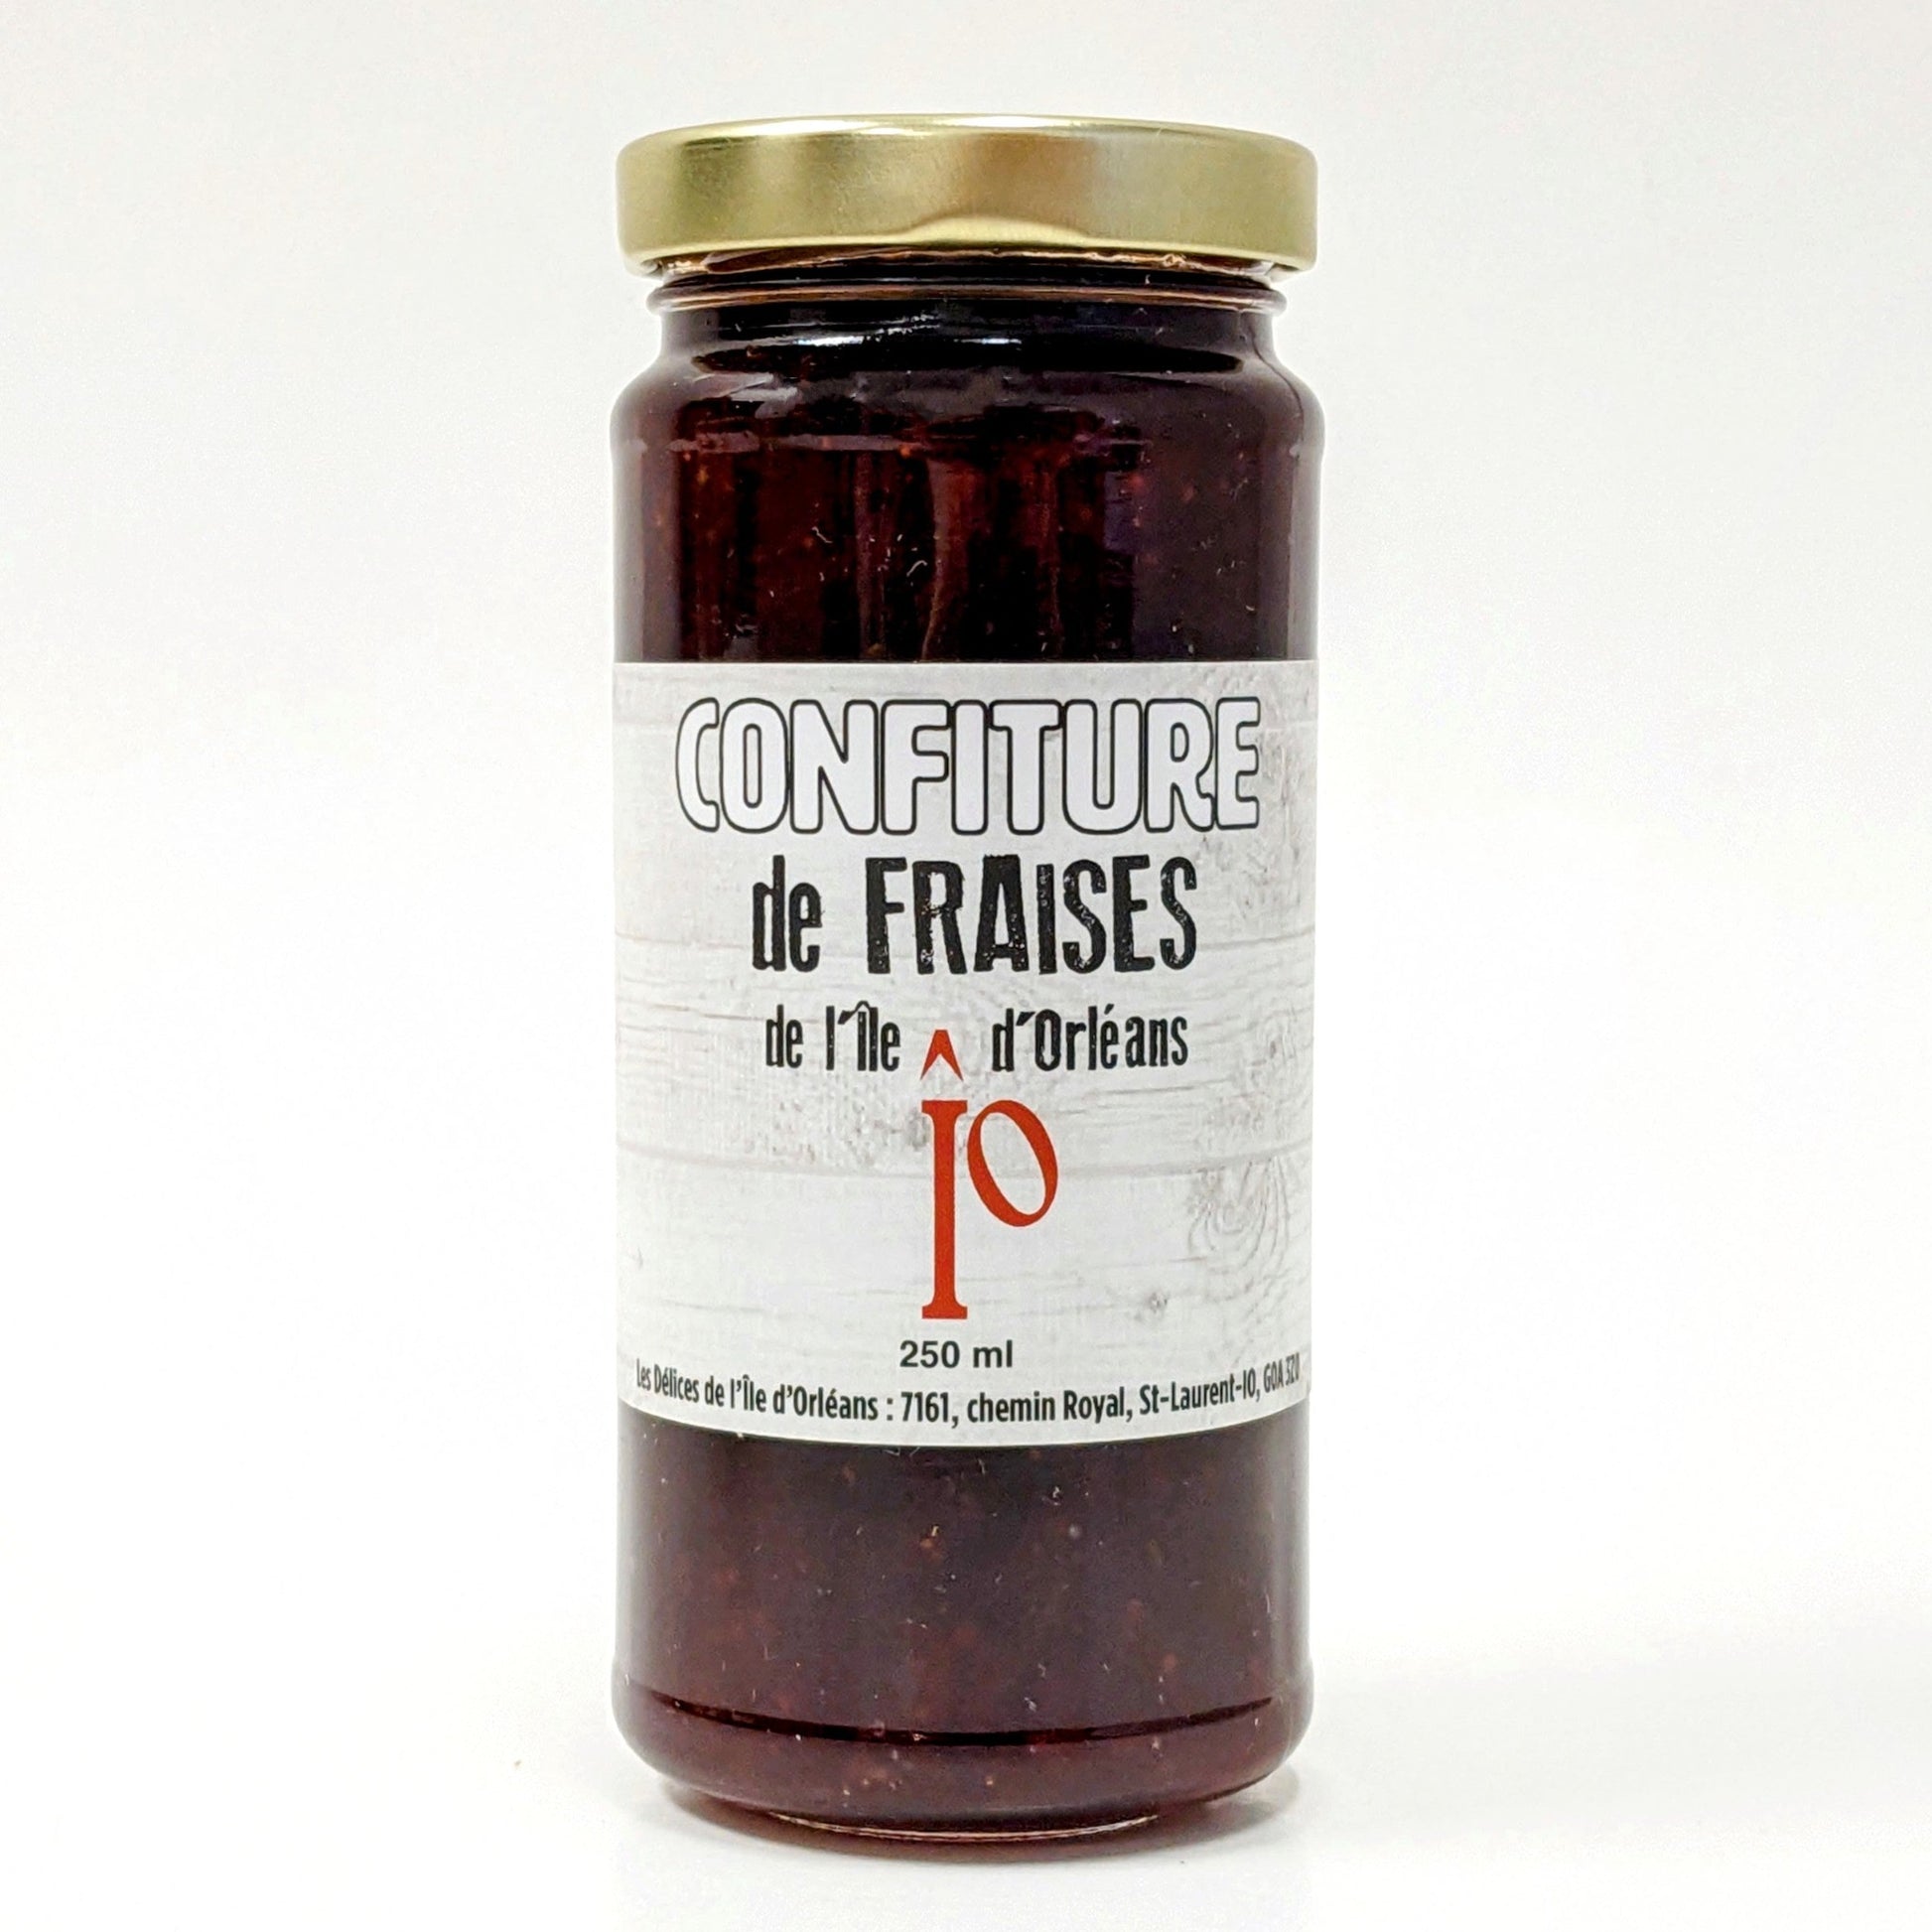 Condiment Datte Figue Épices, Achat-vente en ligne